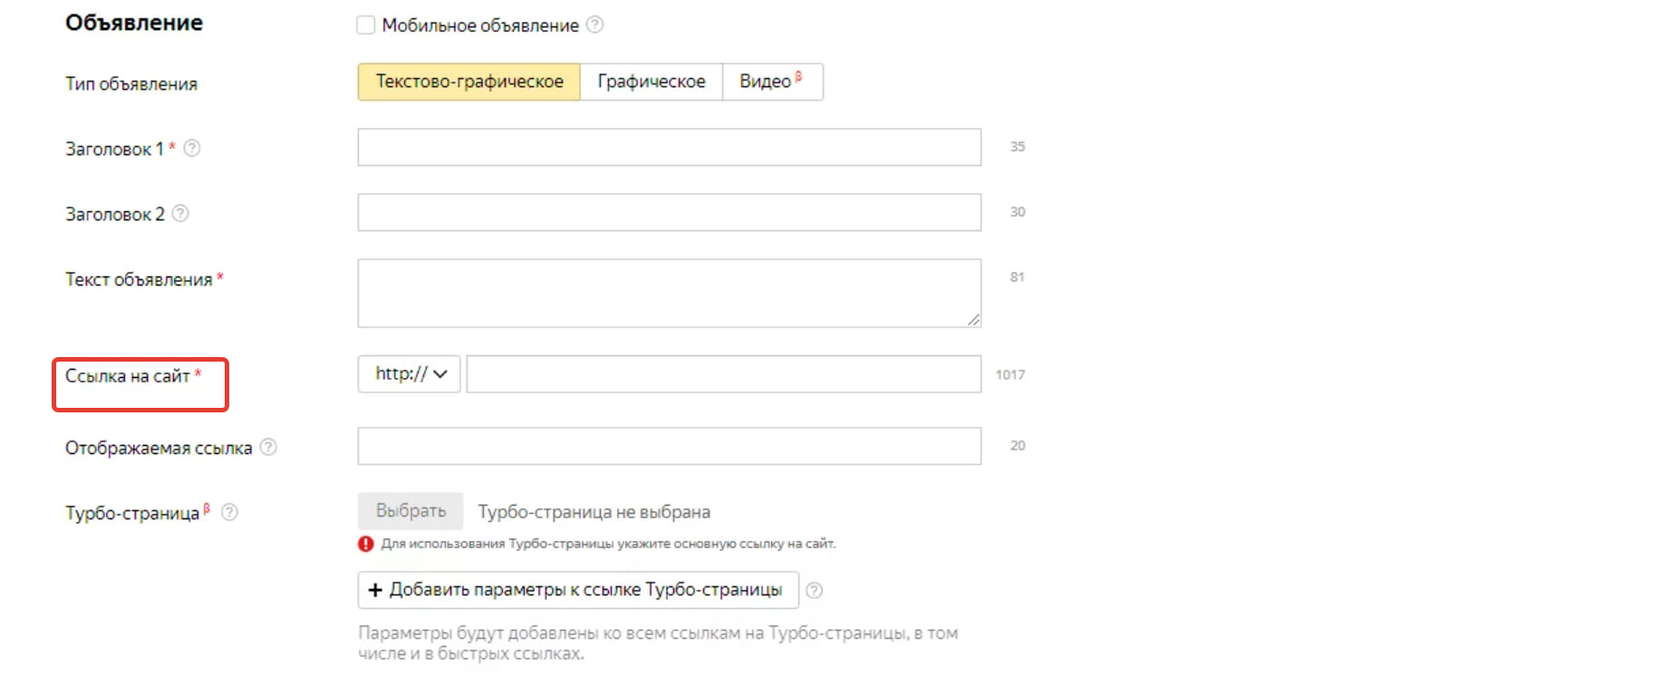 Добавление ссылки с utm-метками в Яндекс.Директе